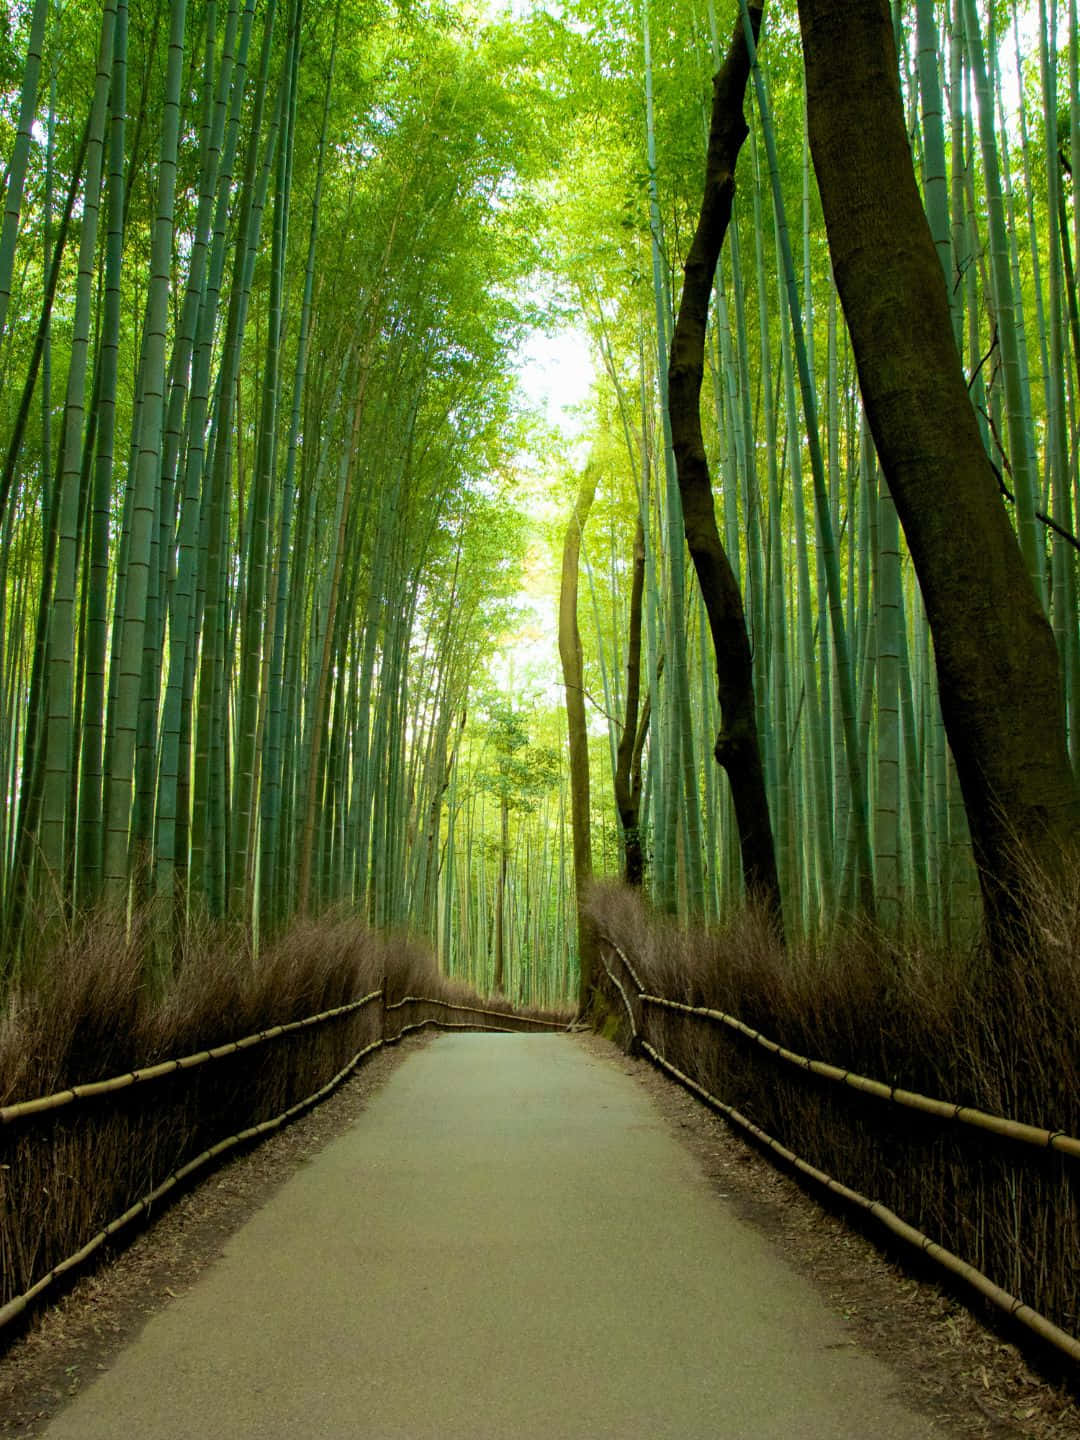 Fundode Tela De Bambu Em 1440p, Com Uma Estrada Suave Rodeada Por Árvores De Bambu.